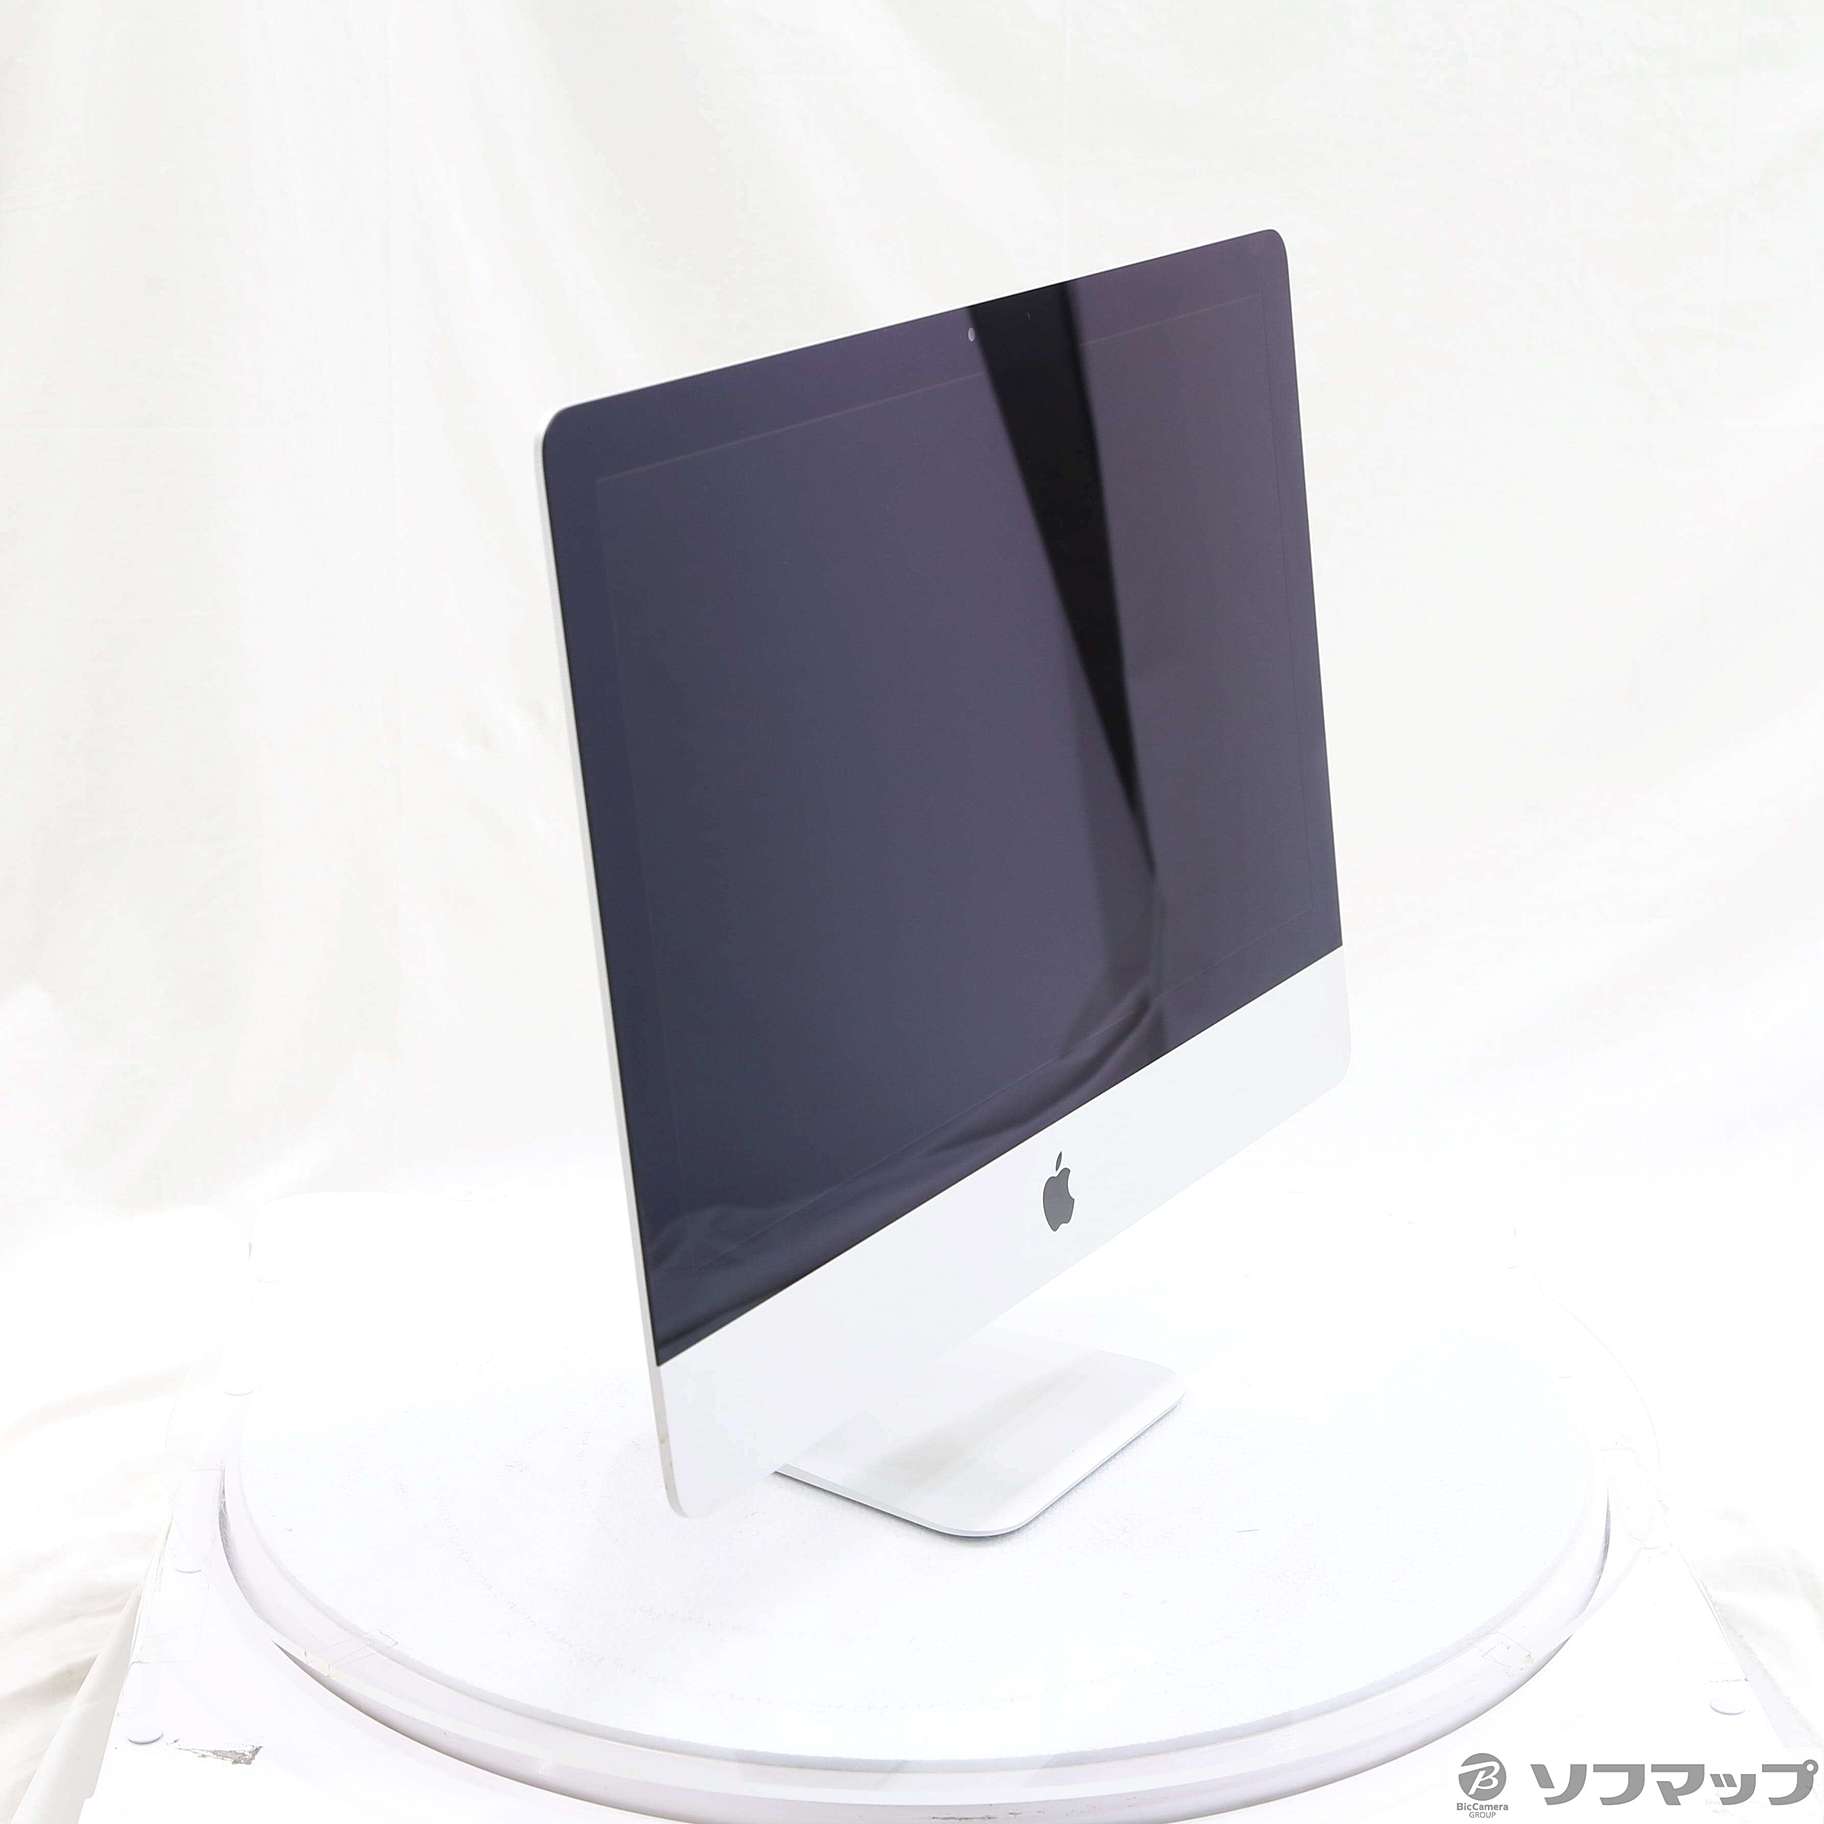 iMac 21.5inch ジャンク品(Late 2013)ME086J/A